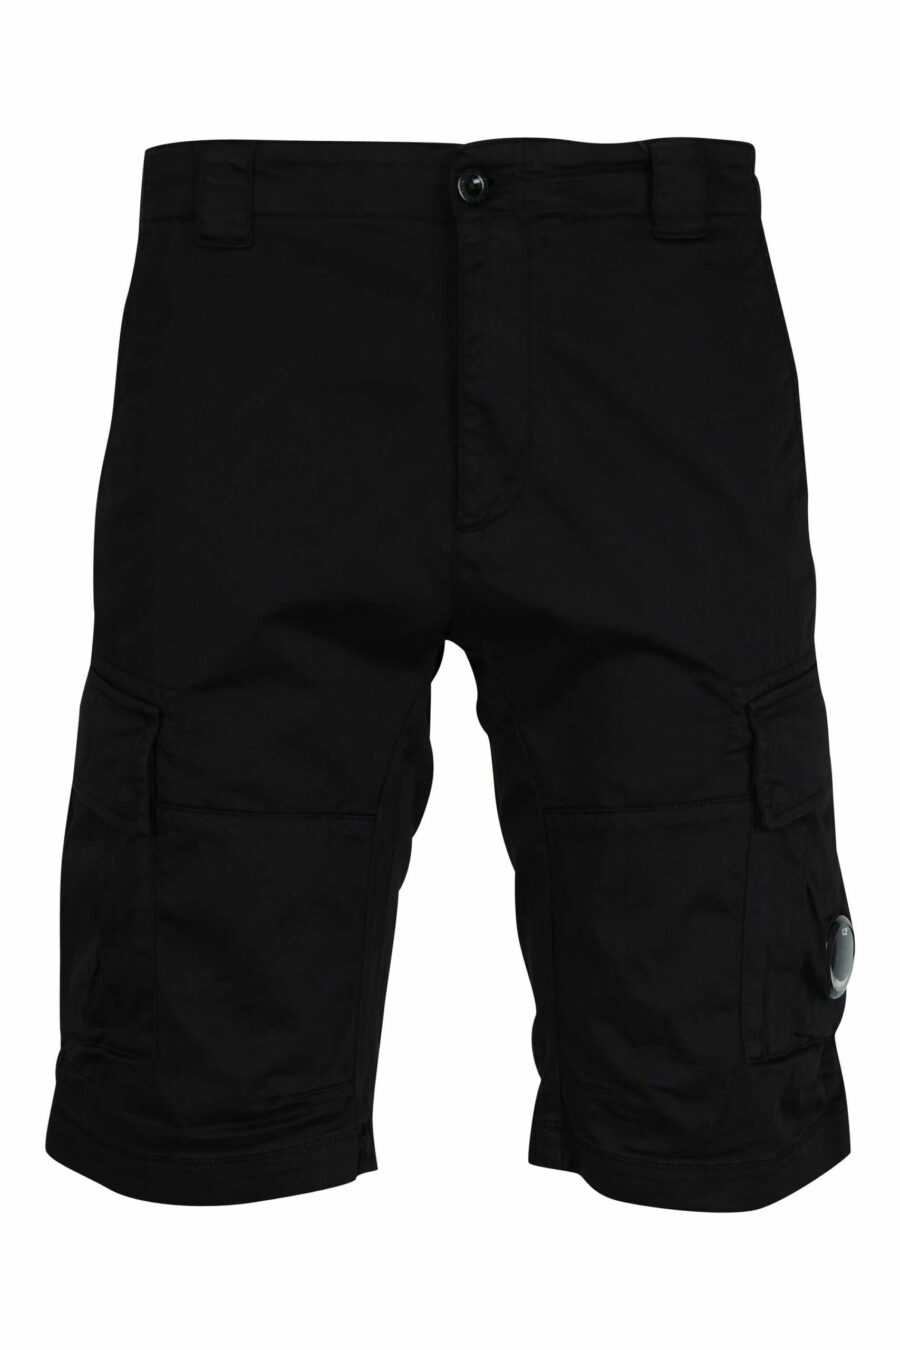 Pantalón corto negro estilo cargo con minilogo lente - 7620943698381 scaled